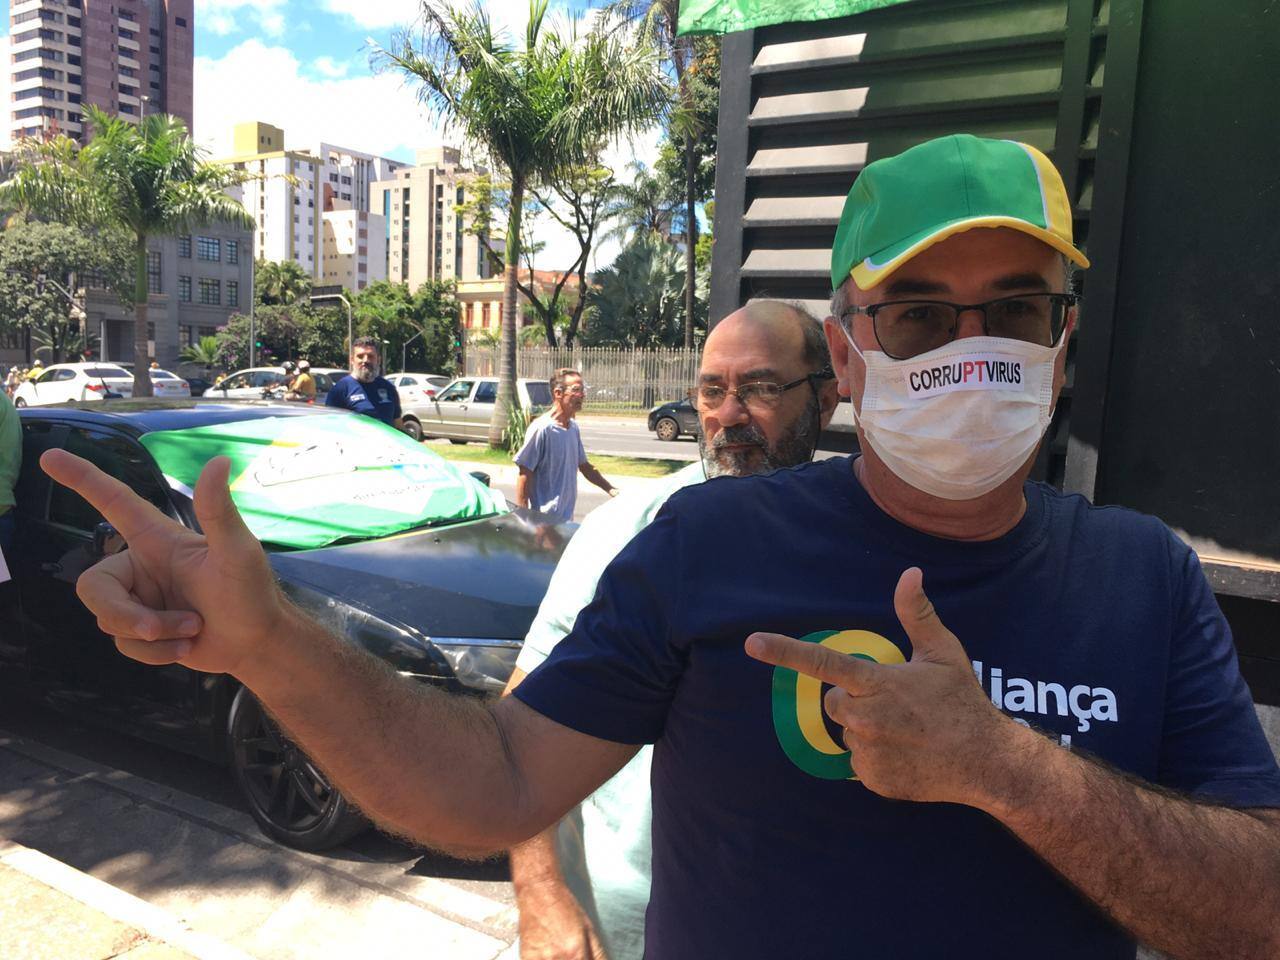 Em Belo Horizonte, alguns manifestantes usaram máscaras